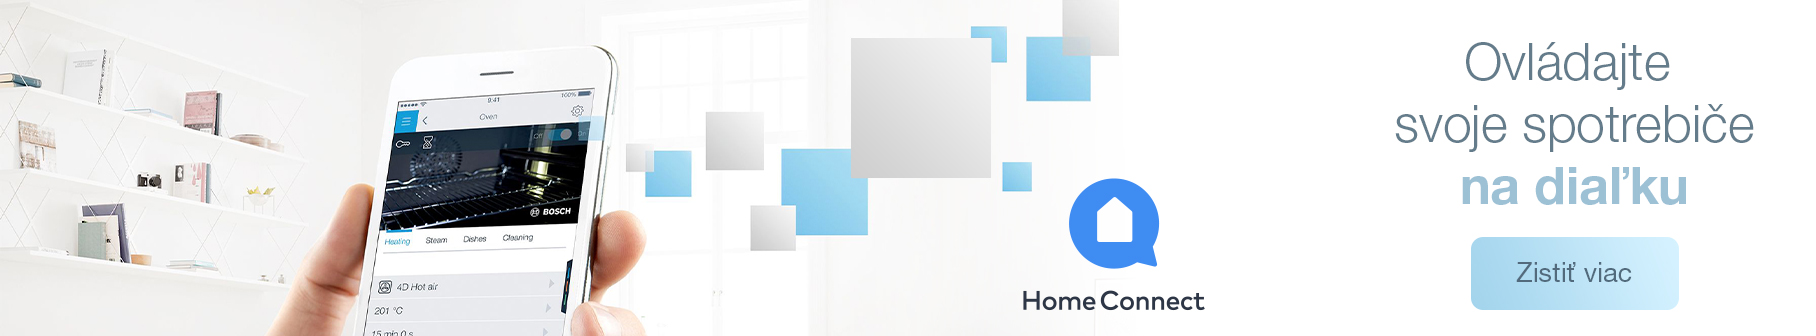 Bosch - Home Connect - Ovládajte svoje spotrebiče na diaľku